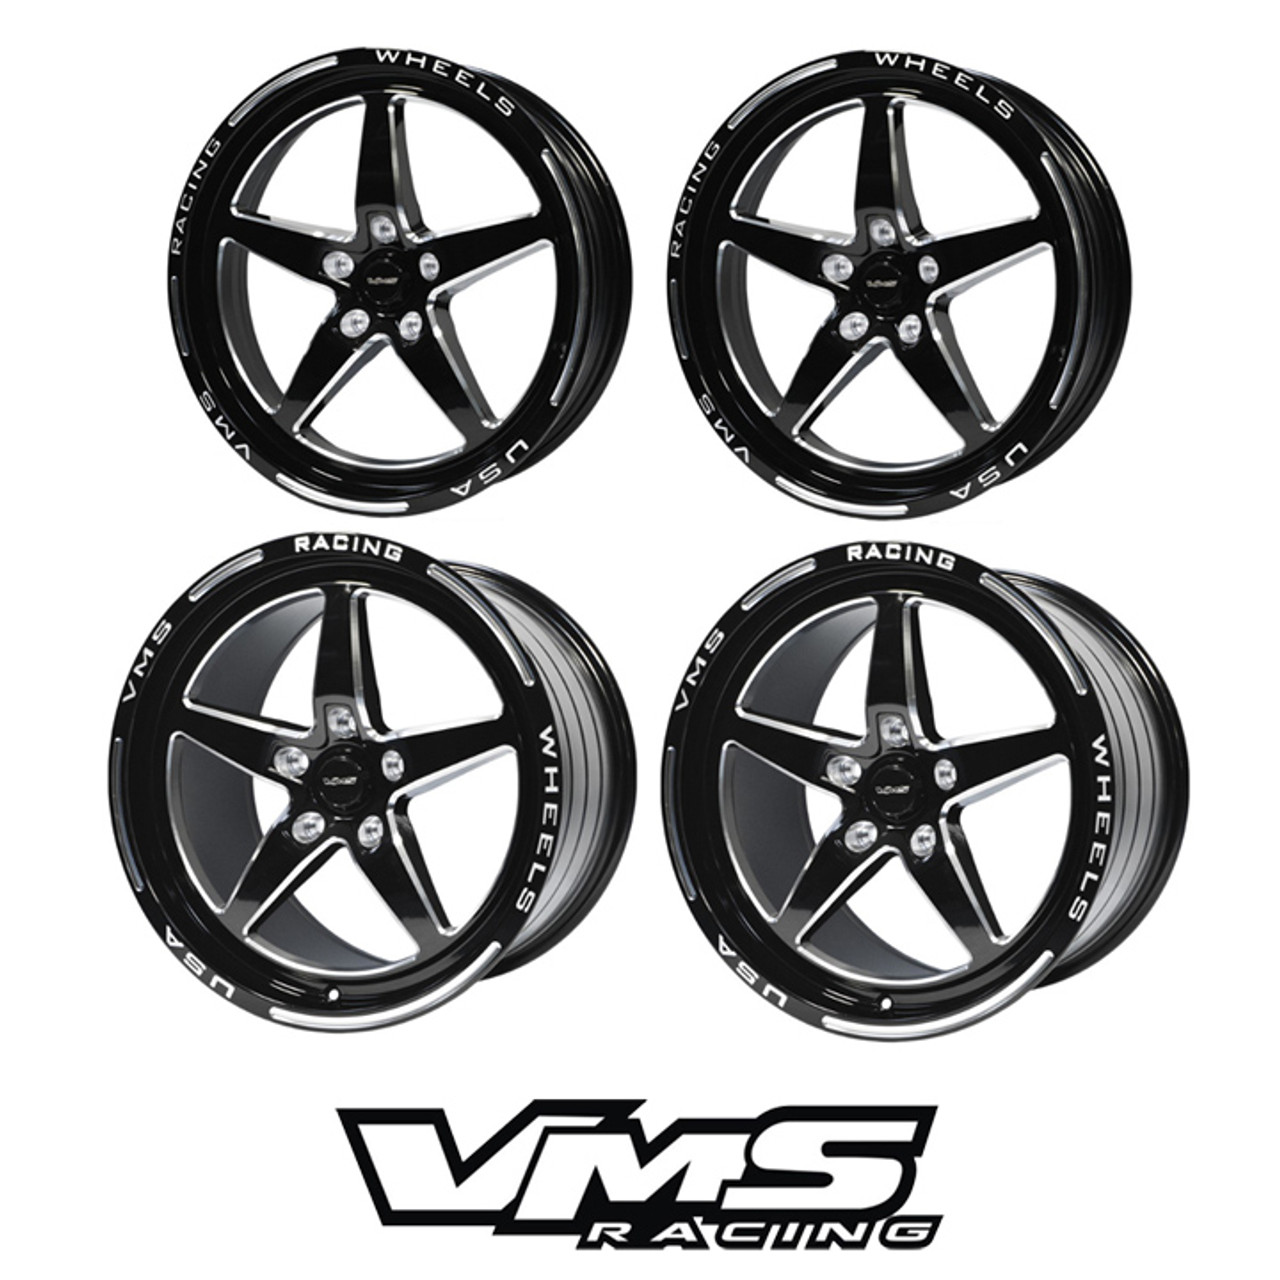 2011 mustang vossen wheels